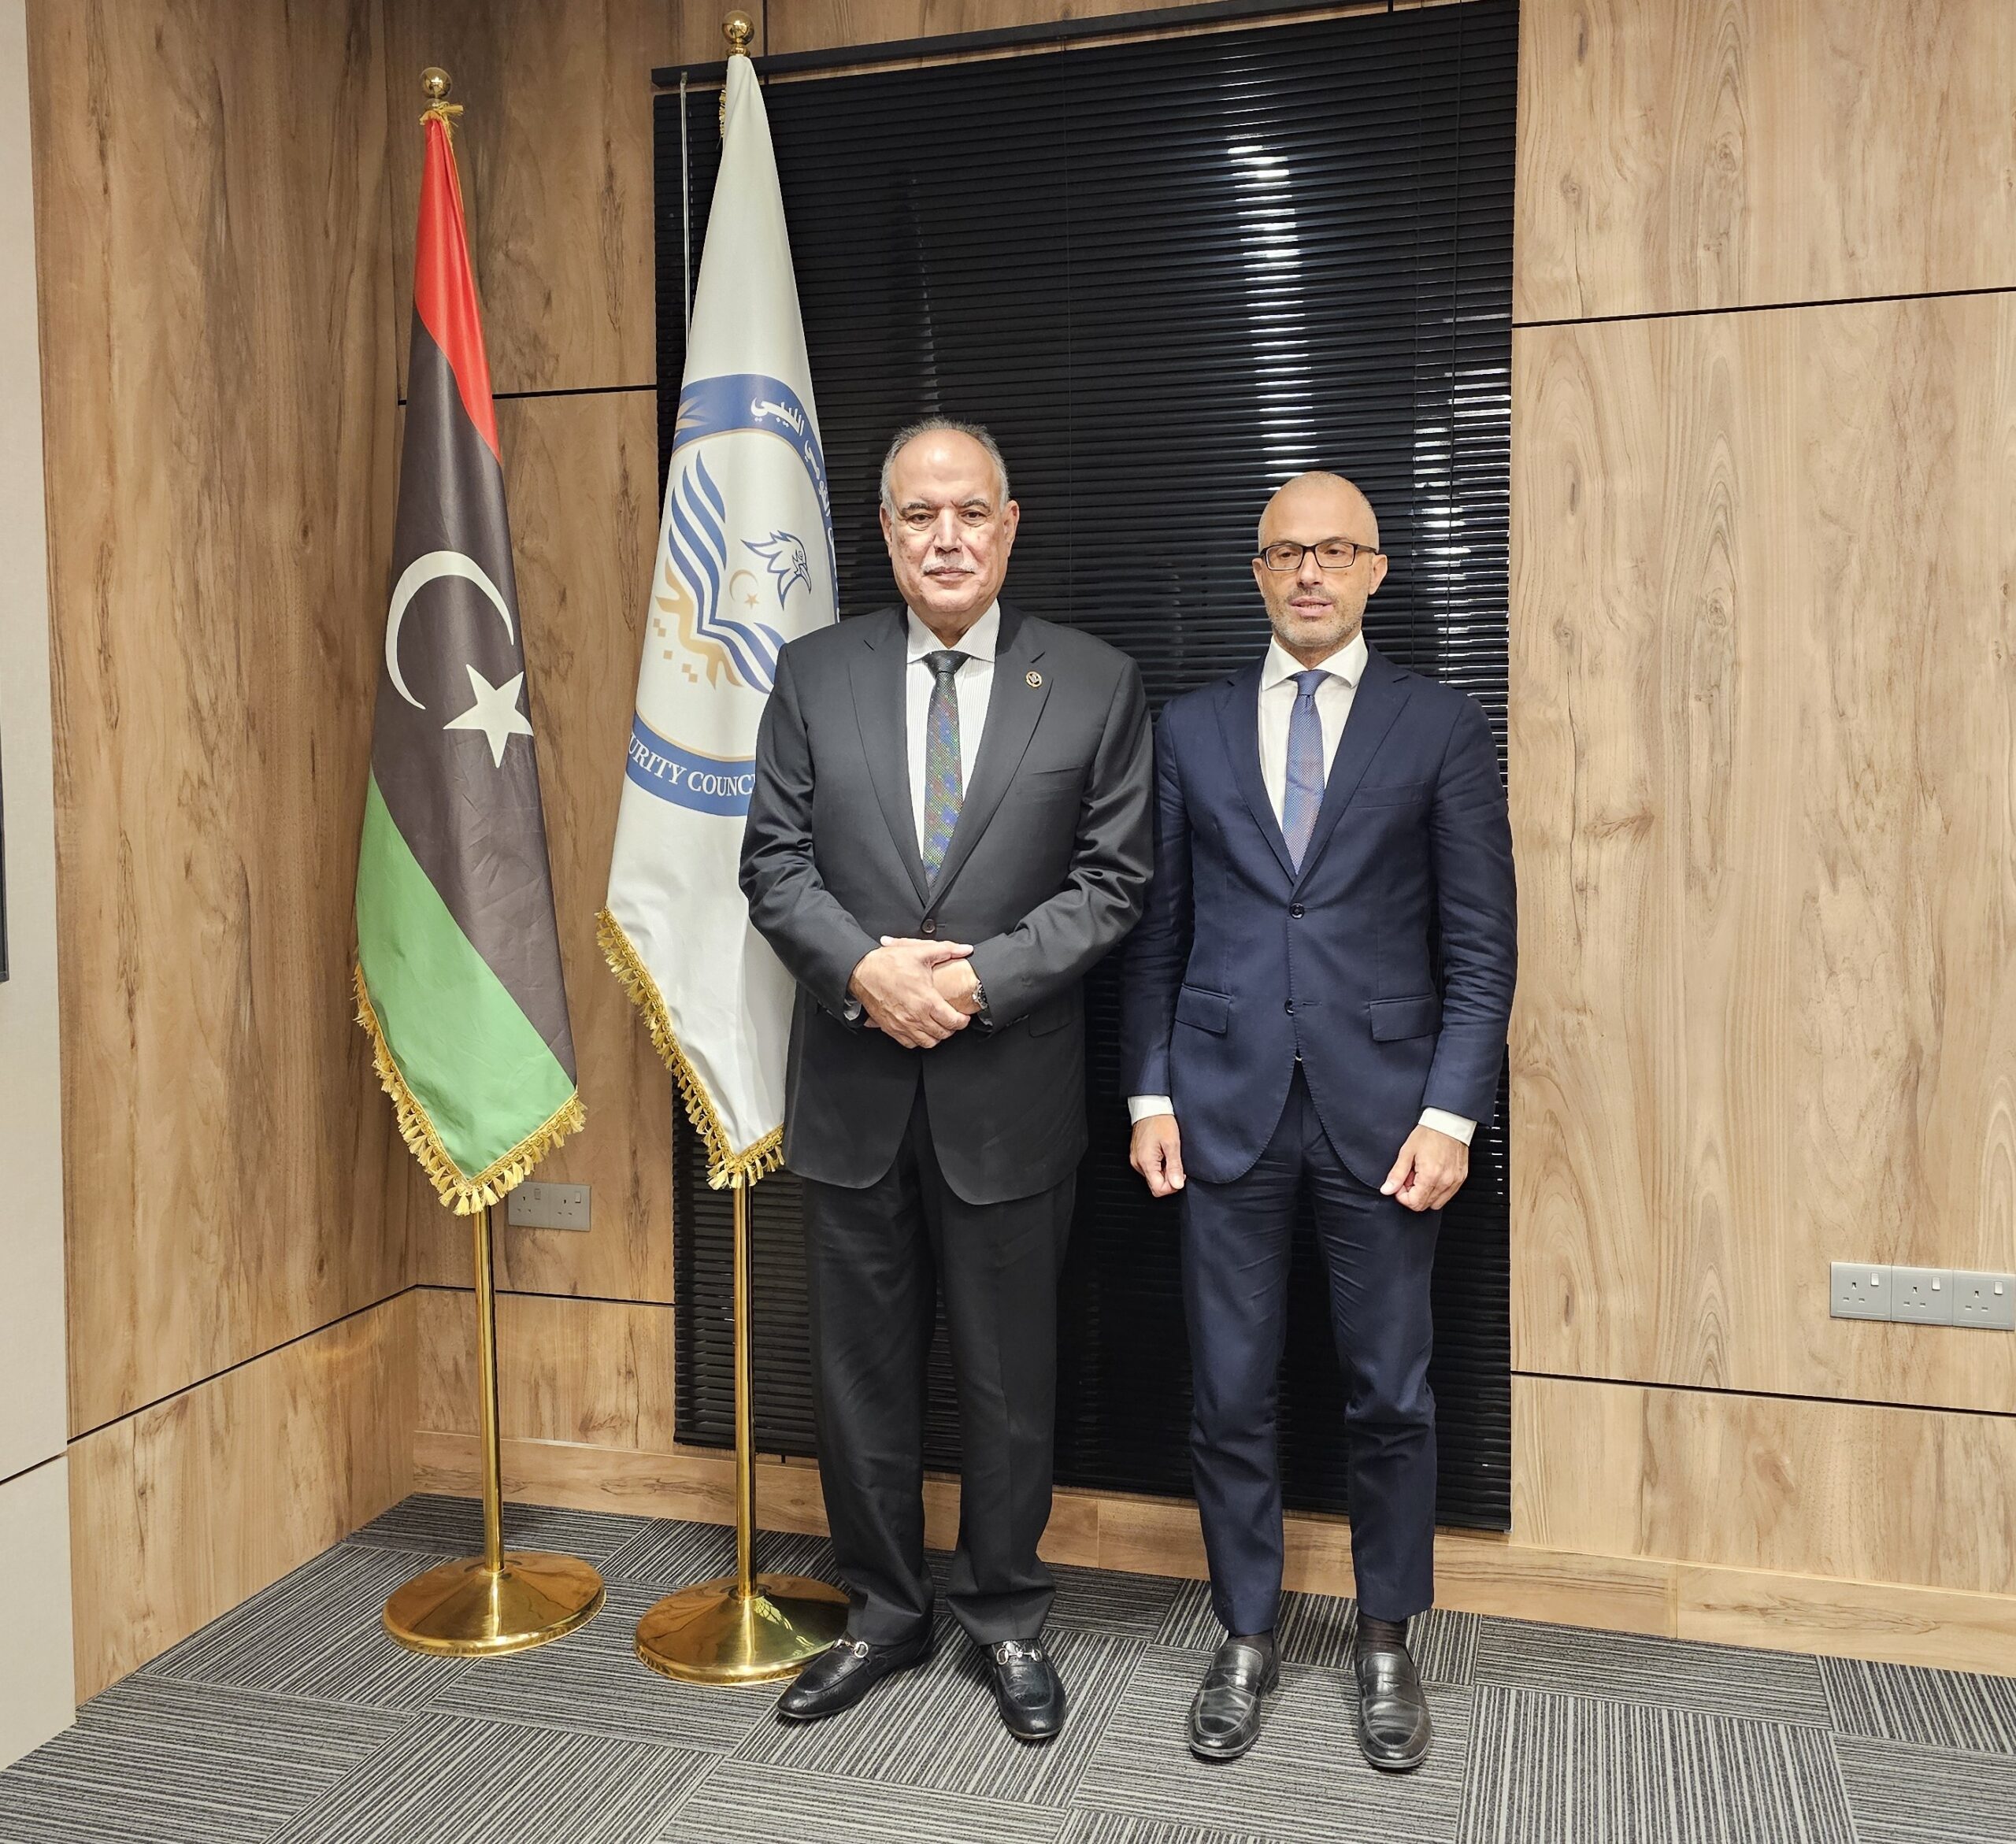 بوشناف يبحث مع سفير الاتحاد الأوروبي المستجدات على الساحة الليبية والدولية